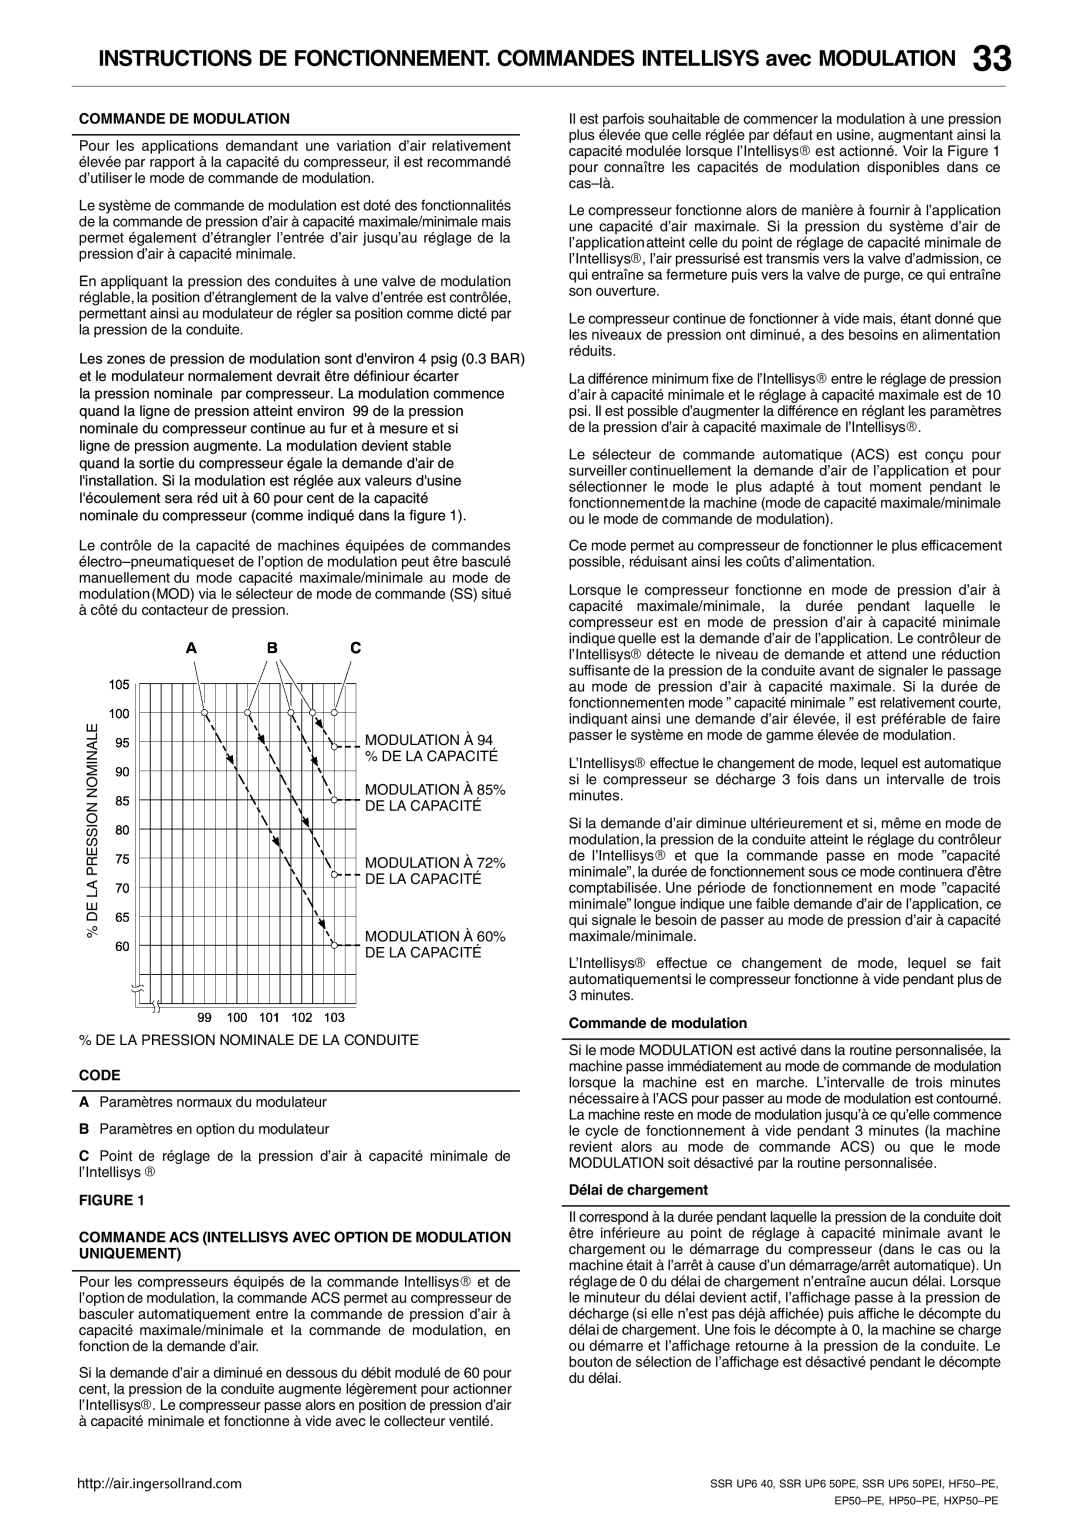 Ingersoll-Rand HP50-PE INSTRUCTIONS DE FONCTIONNEMENT. COMMANDES INTELLISYS avec MODULATION, Commande De Modulation, Code 